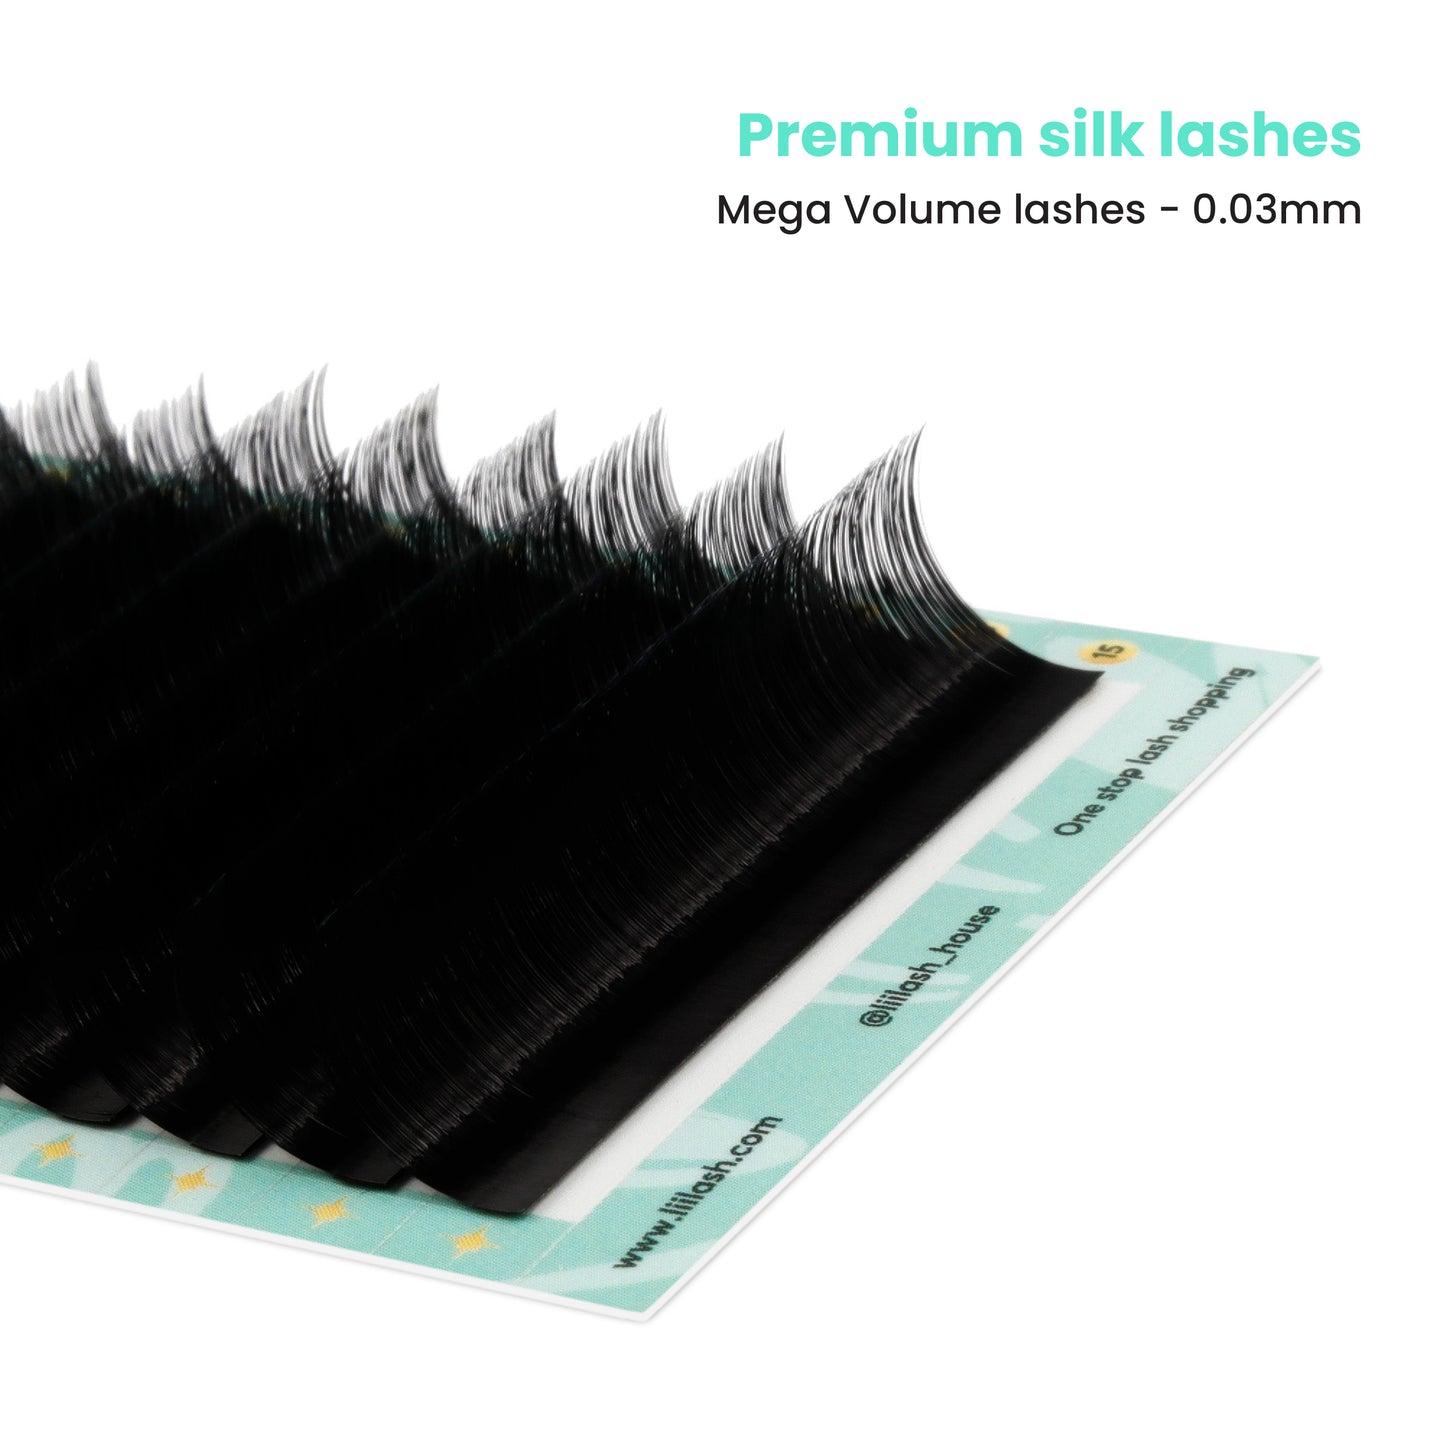 Premium Mink volume lashes 0.03mm